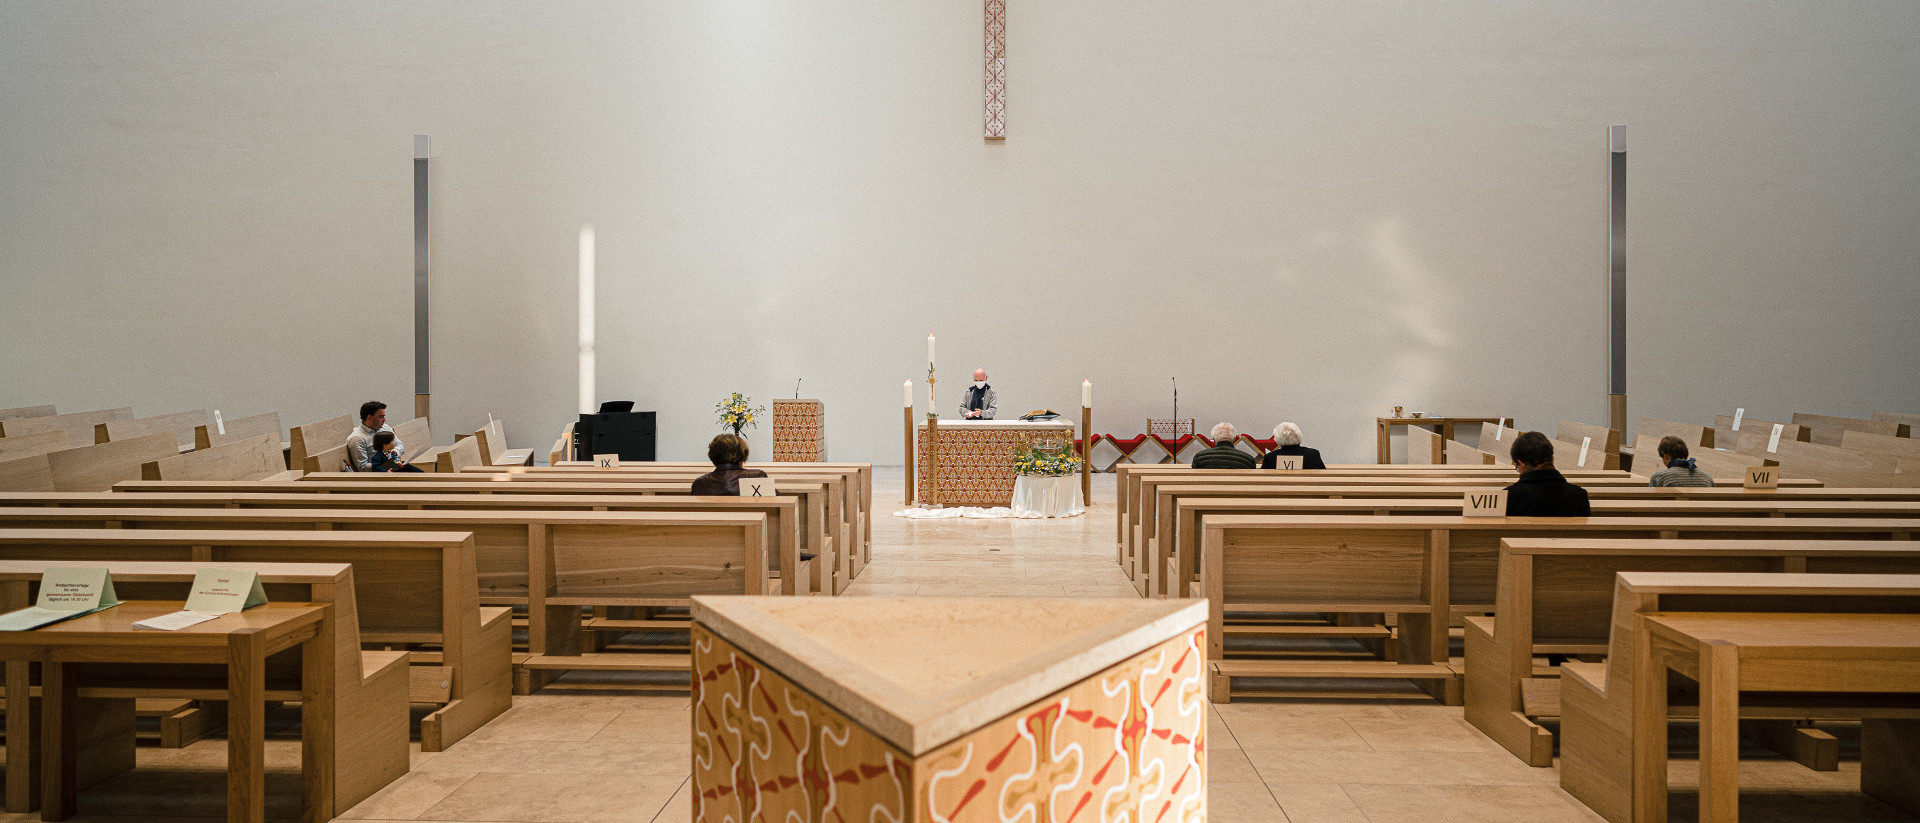 Après leur inscription, les visiteurs des services religieux sont assis à distance les uns des autres, lors d'une messe dans l'église catholique de Sainte Trinité à Leipzig, le 20 avril 2020. | © KNA 